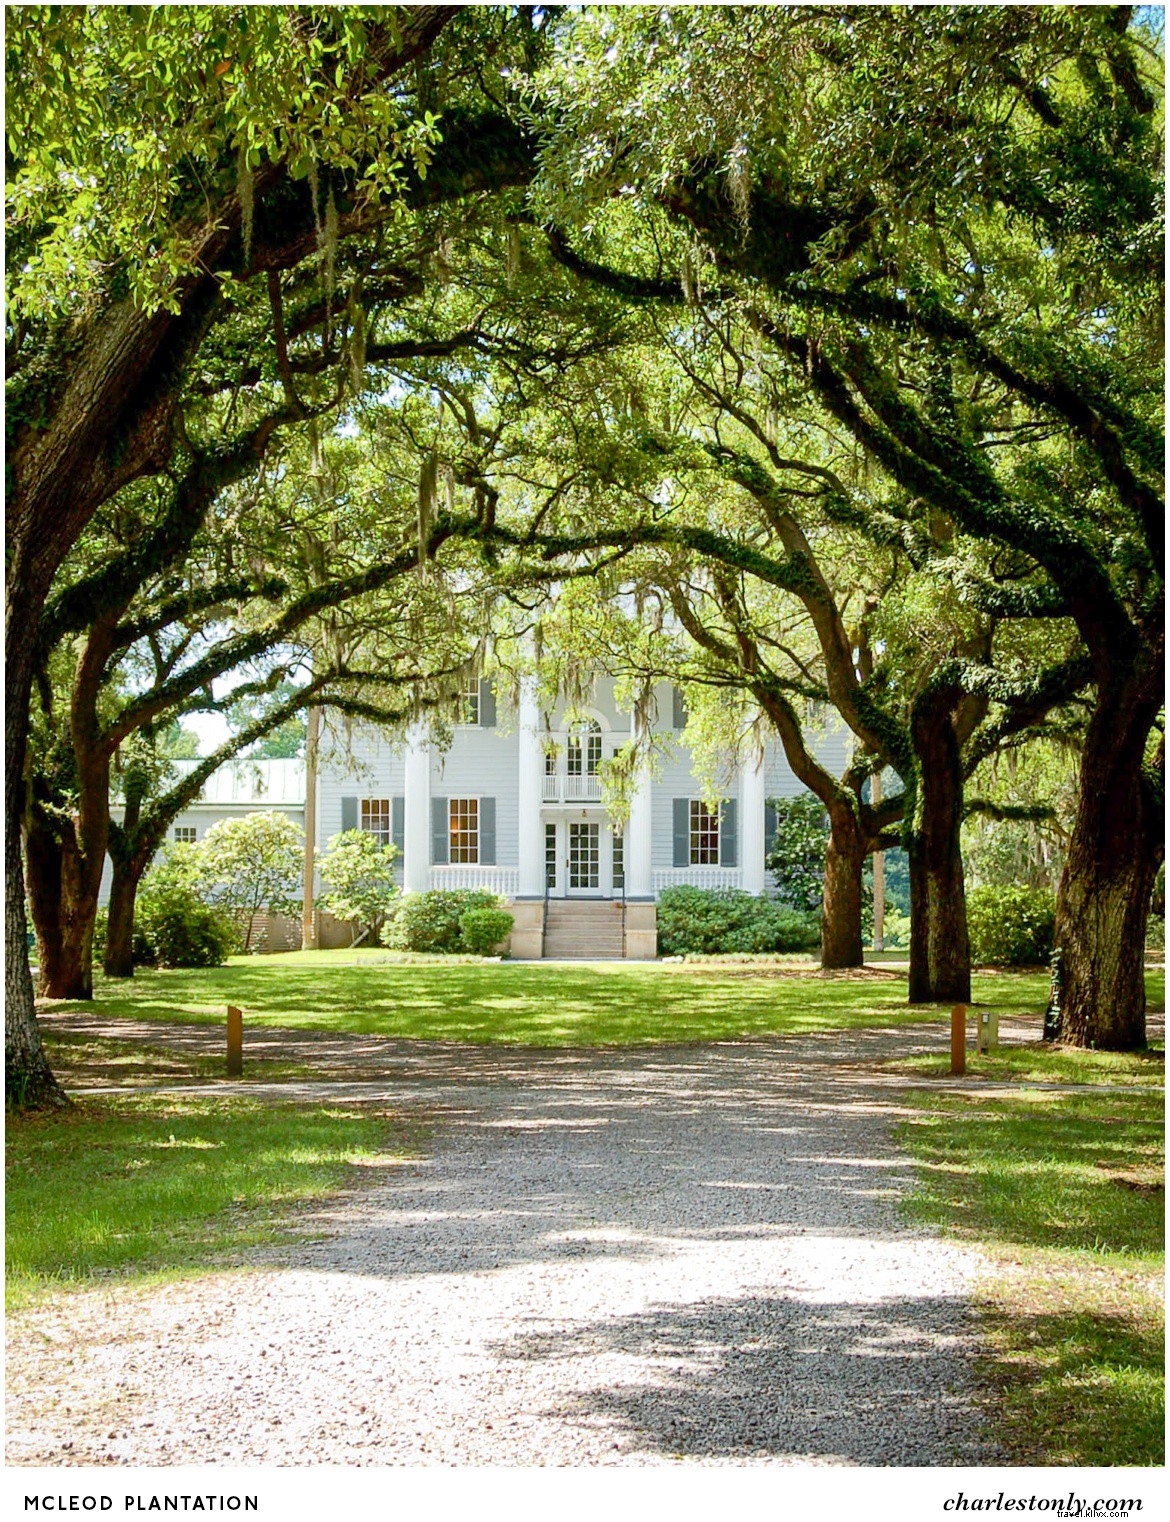 14 locais para experimentar a cultura Gullah em Charleston 